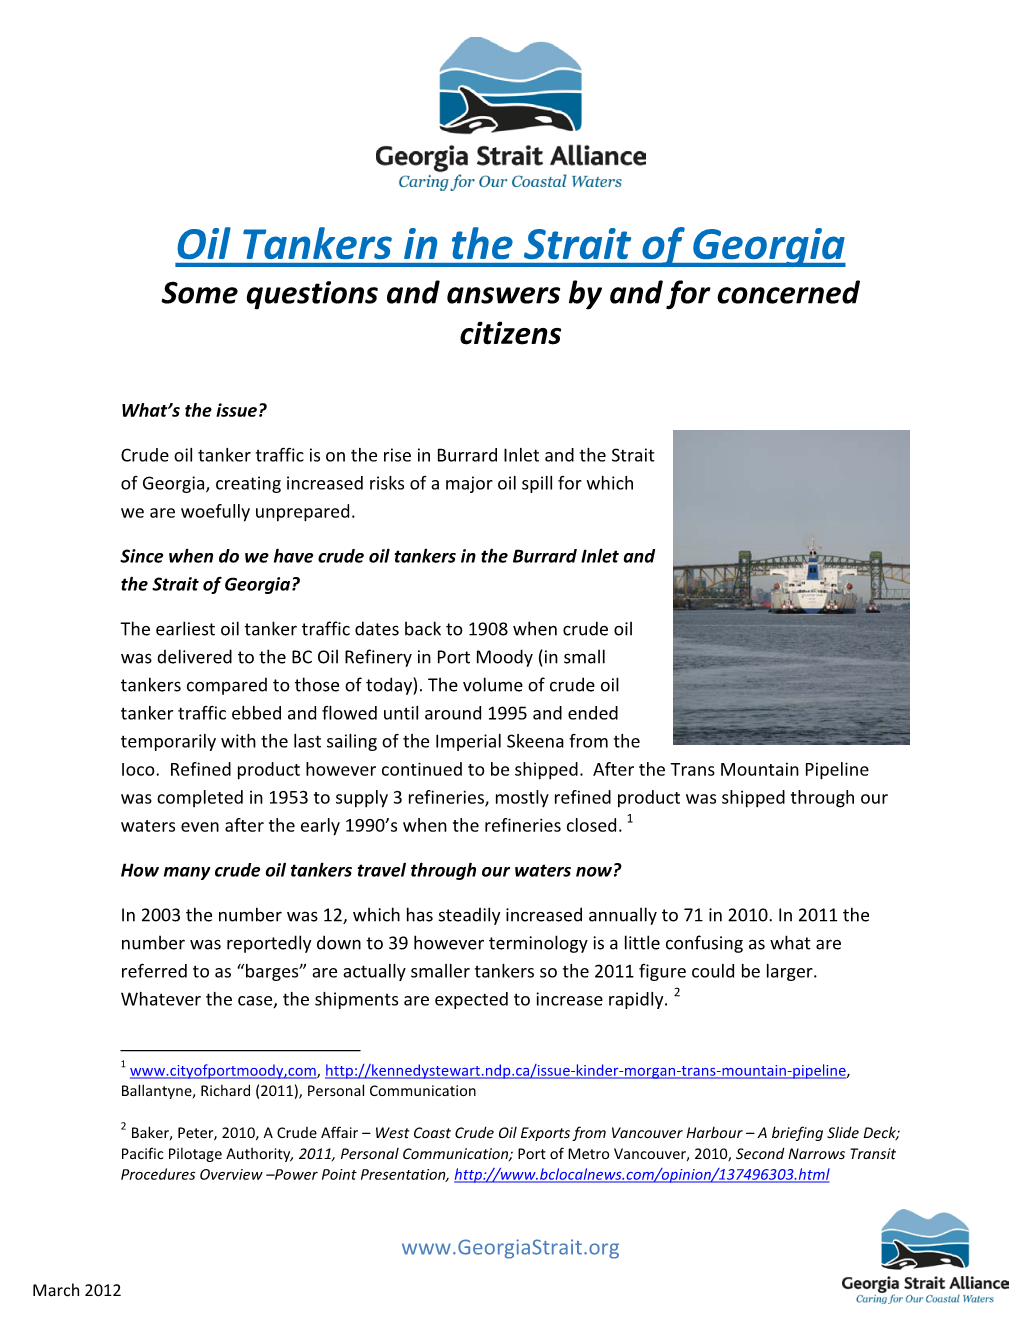 Increase in Oil Tanker Traffic